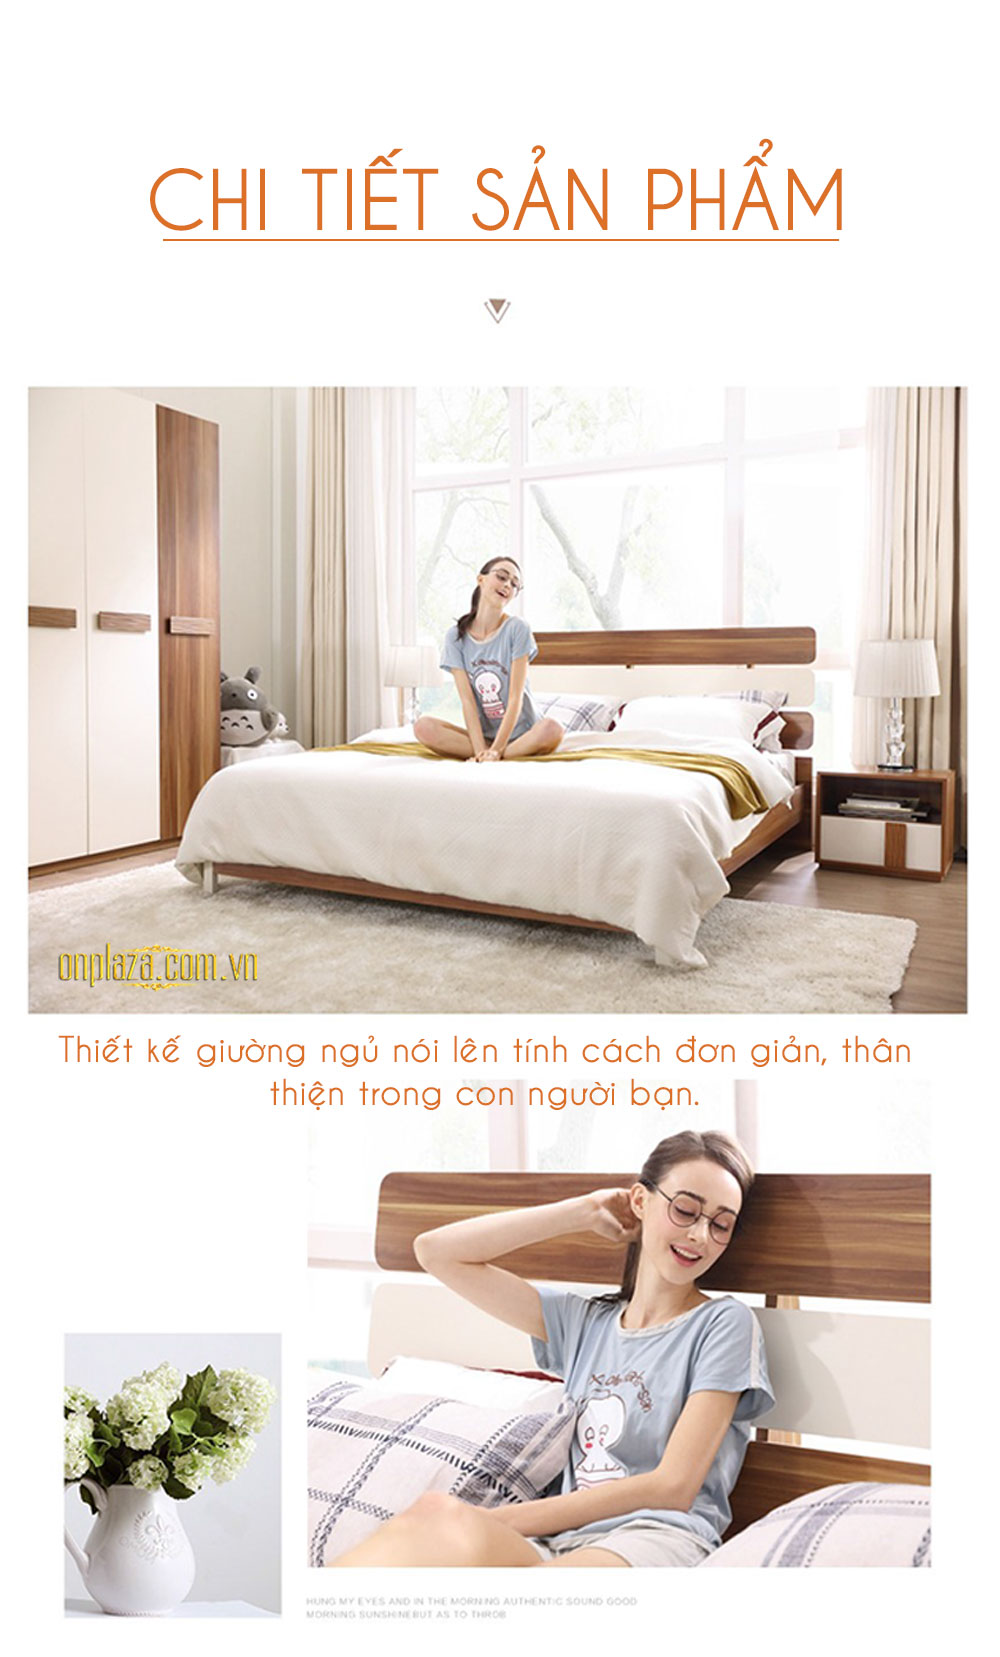 Bộ giường gỗ hiện đại + 2 Tab giường cao cấp G23